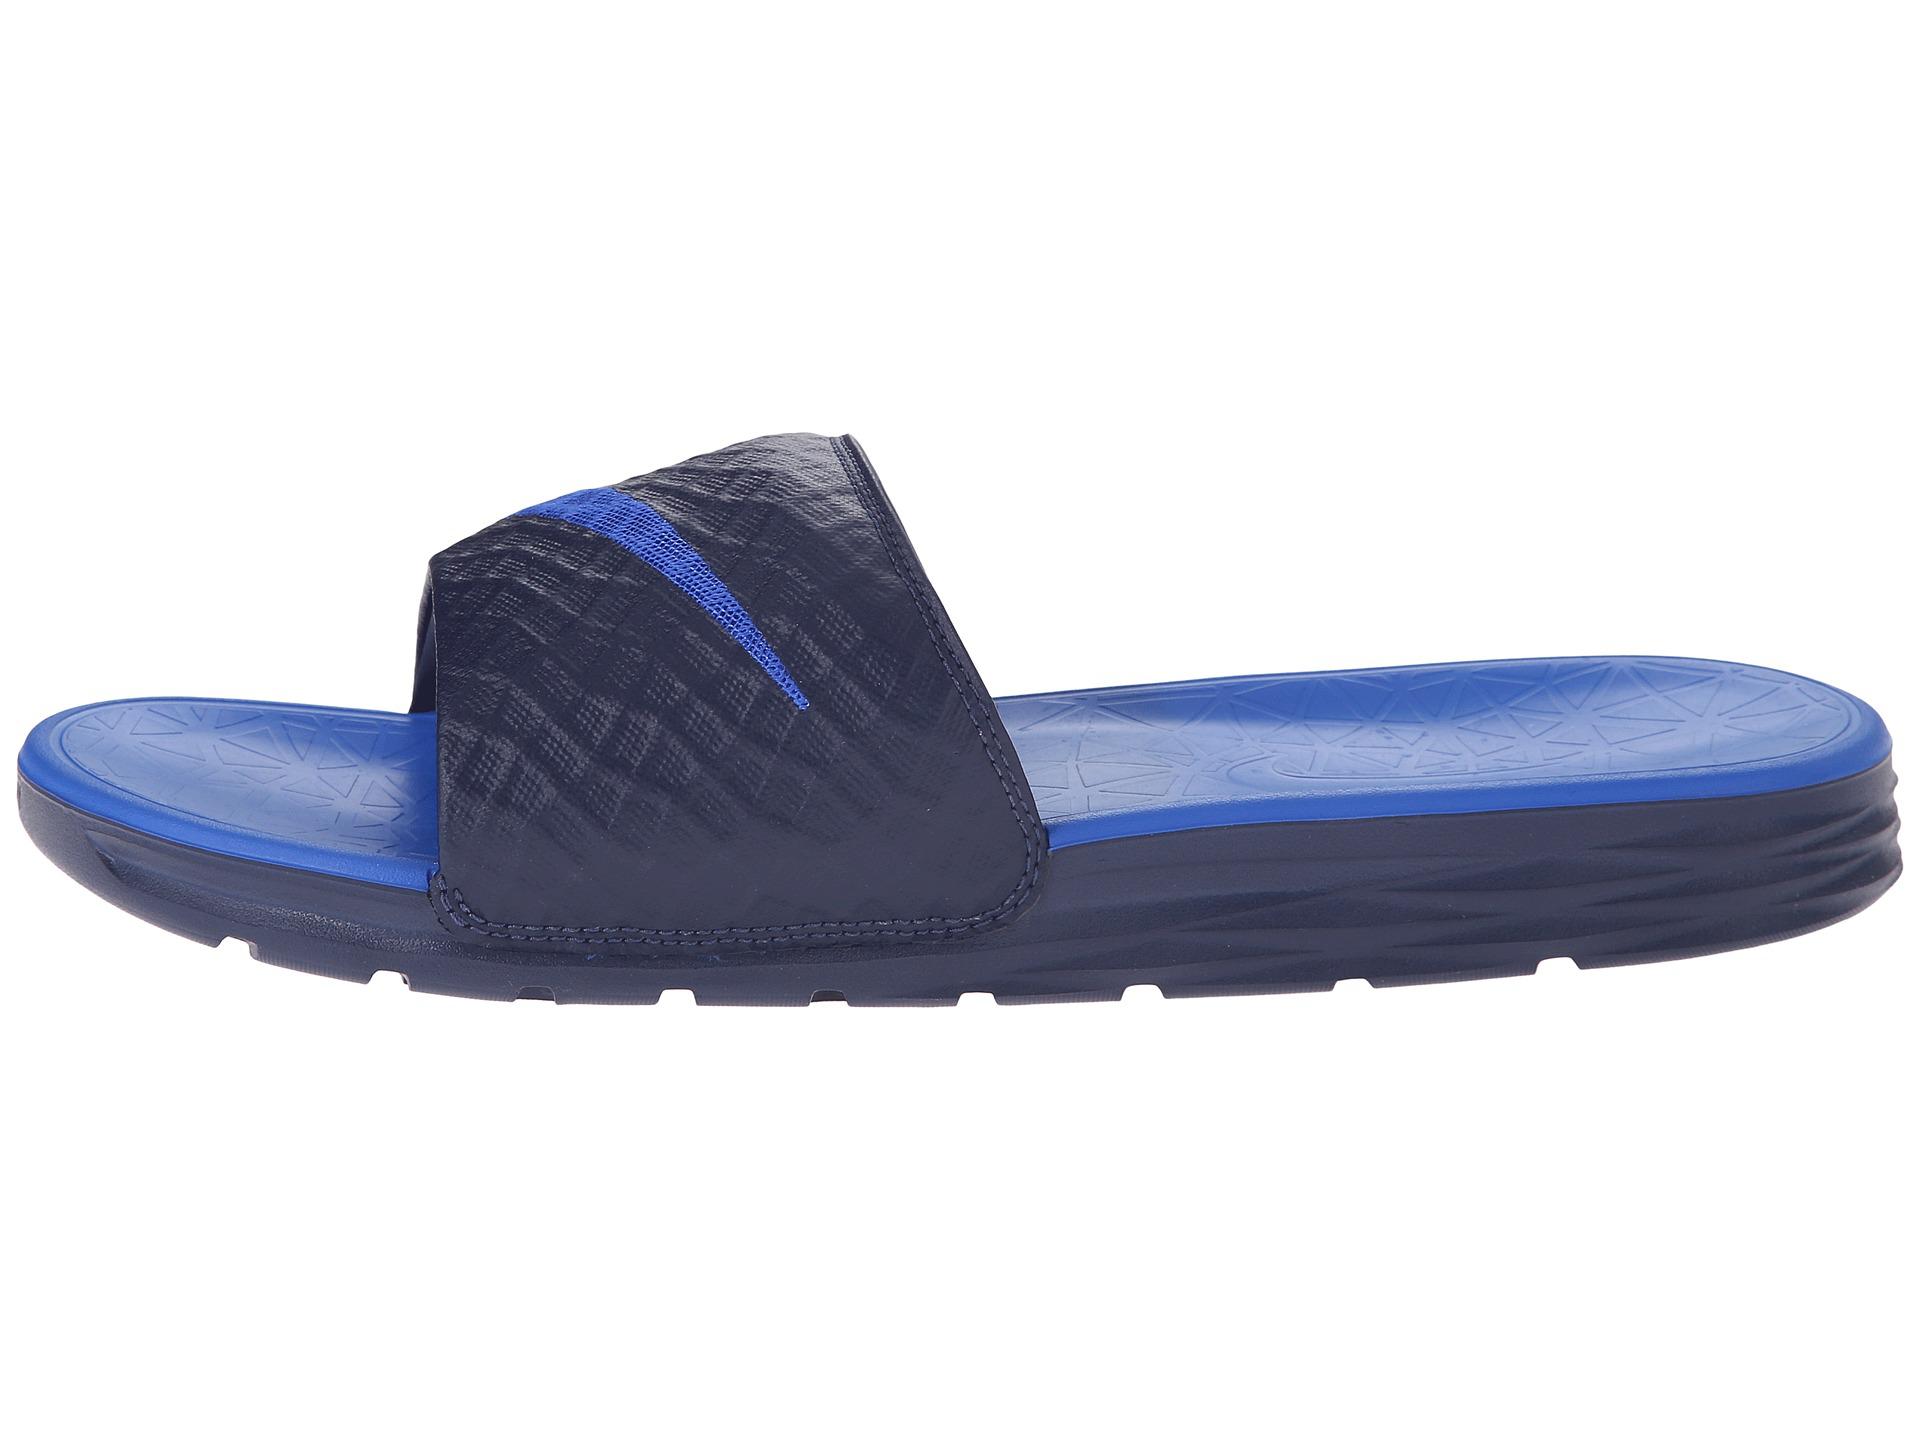 Nike Benassi Solarsoft Slide 2 in Blue for Men - Lyst